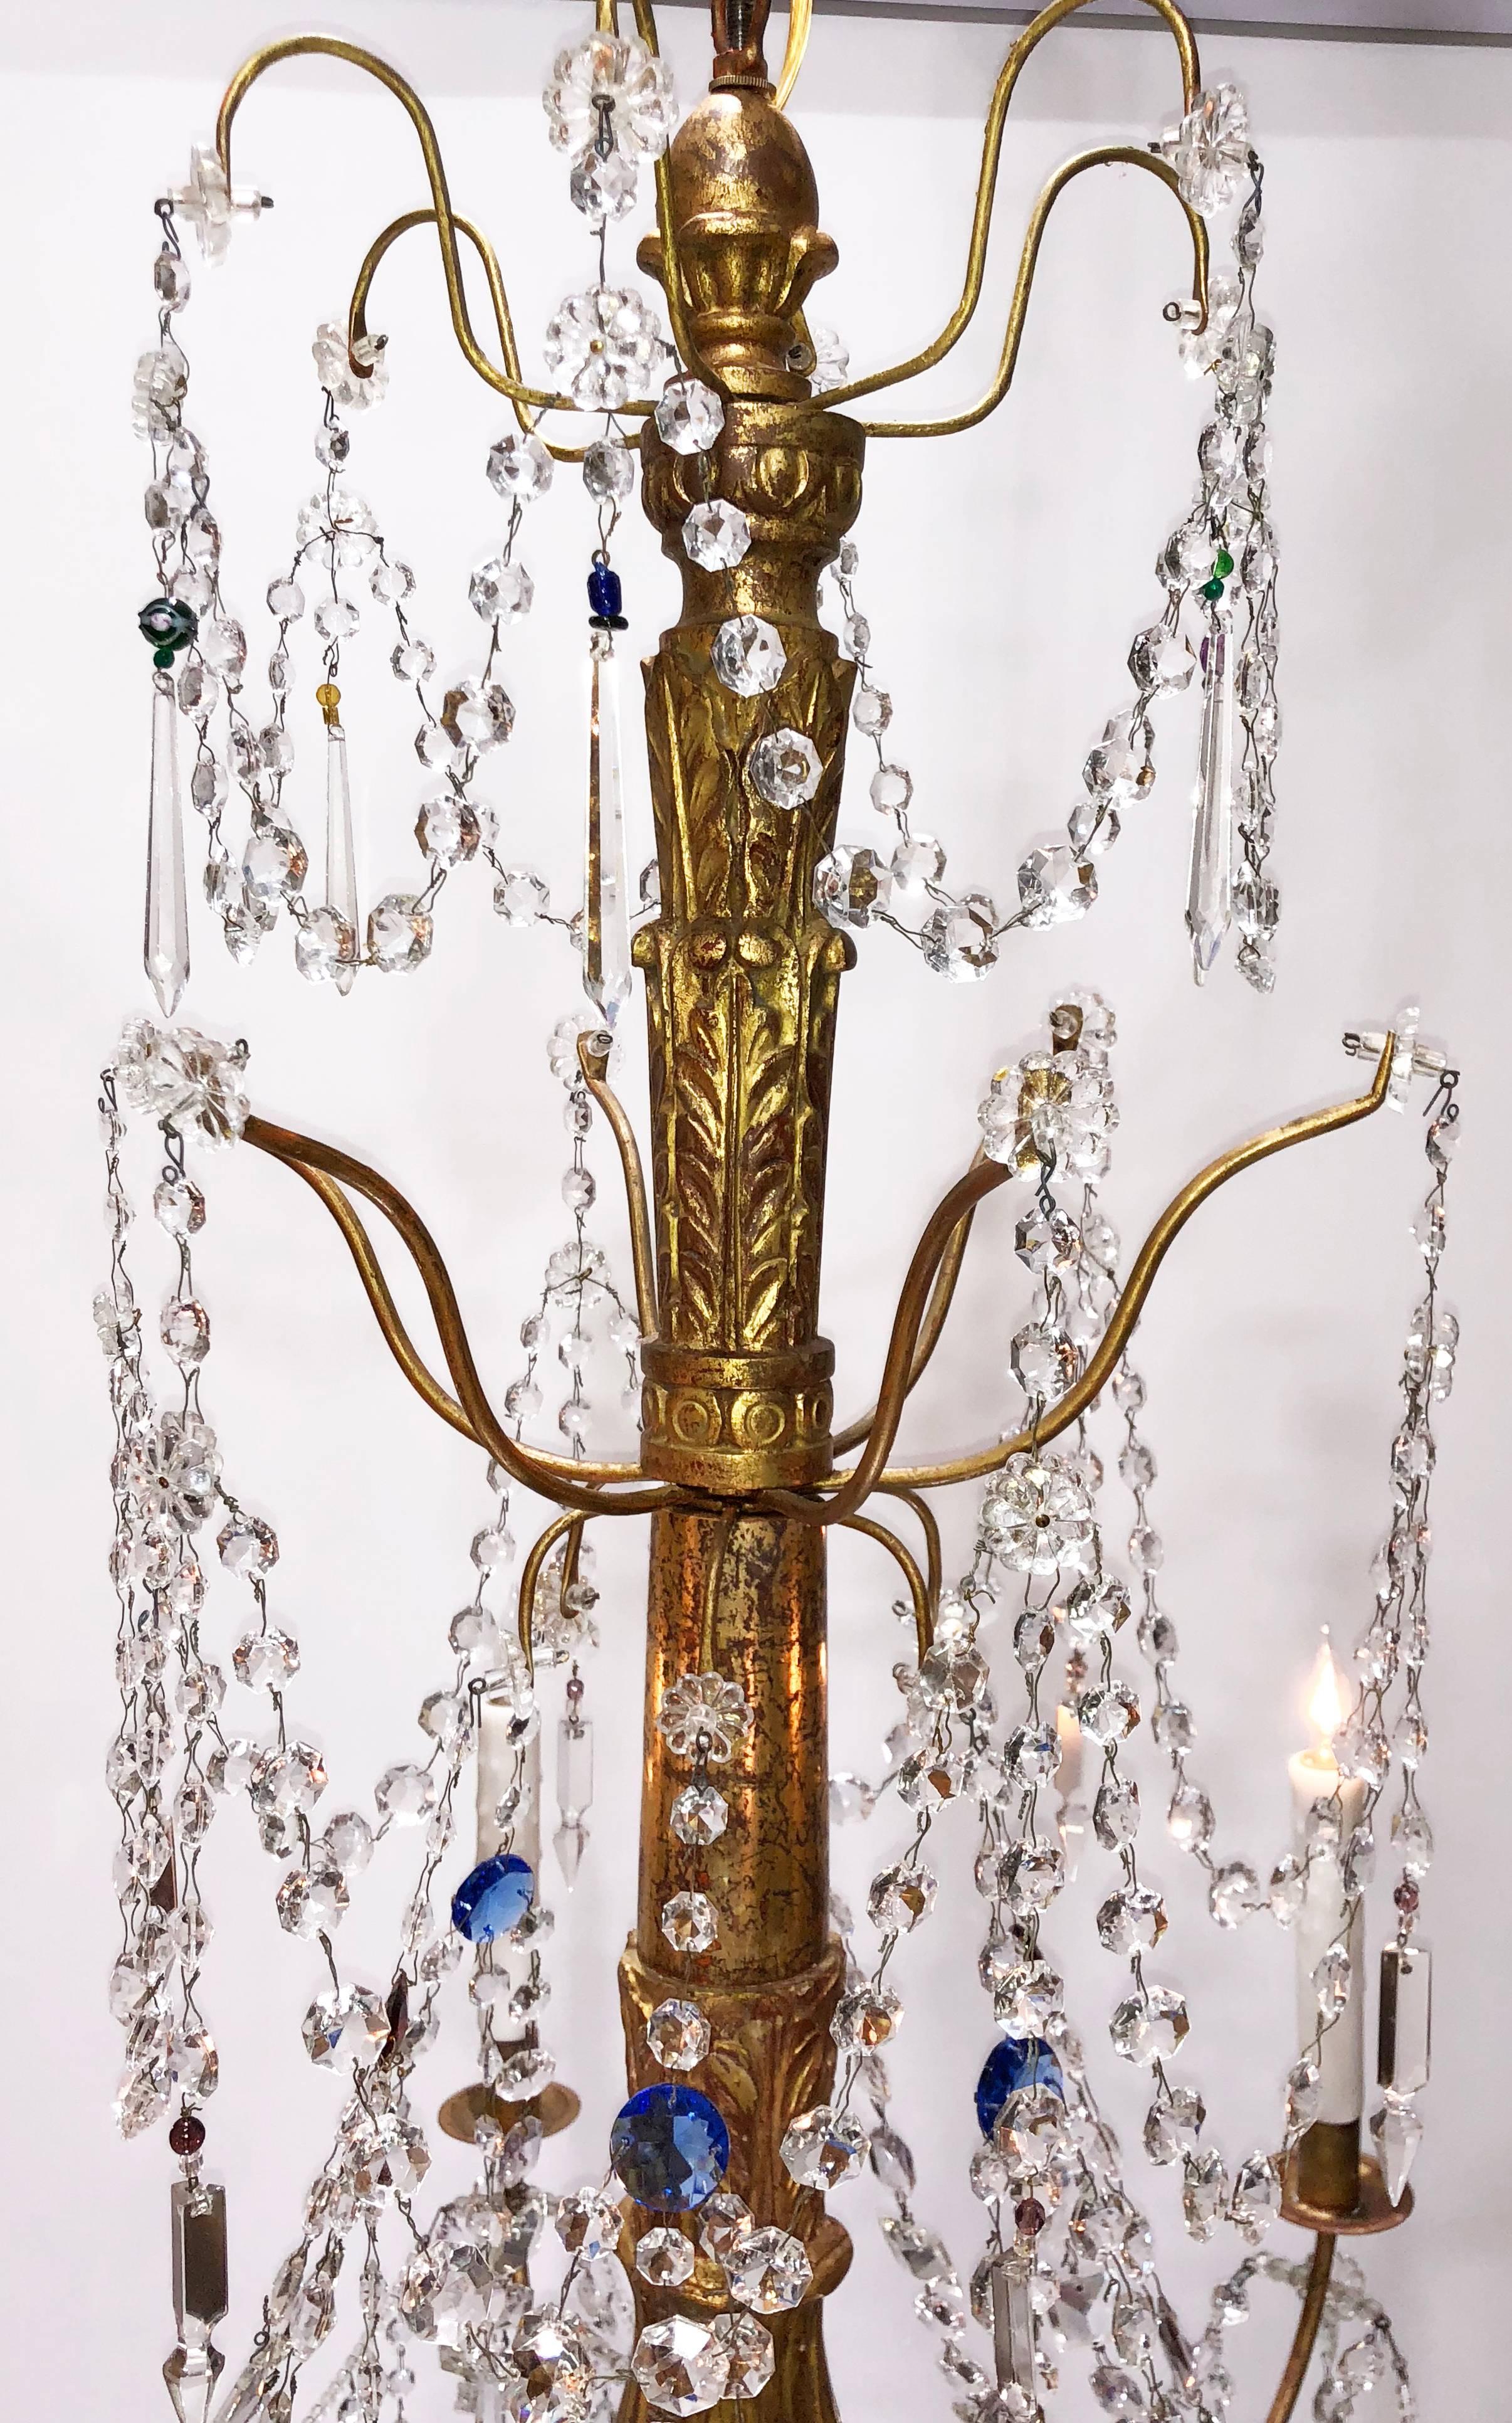 Ein großartiger italienischer Genovese-Kronleuchter aus geschnitztem Goldholz, Kristall und Zinn, um 1890, mit farbigen Kristallen. Sechsarmiger Kronleuchter mit Kristallstäben und Perlen. Der Kronleuchter wurde kürzlich neu verkabelt und mit neuen